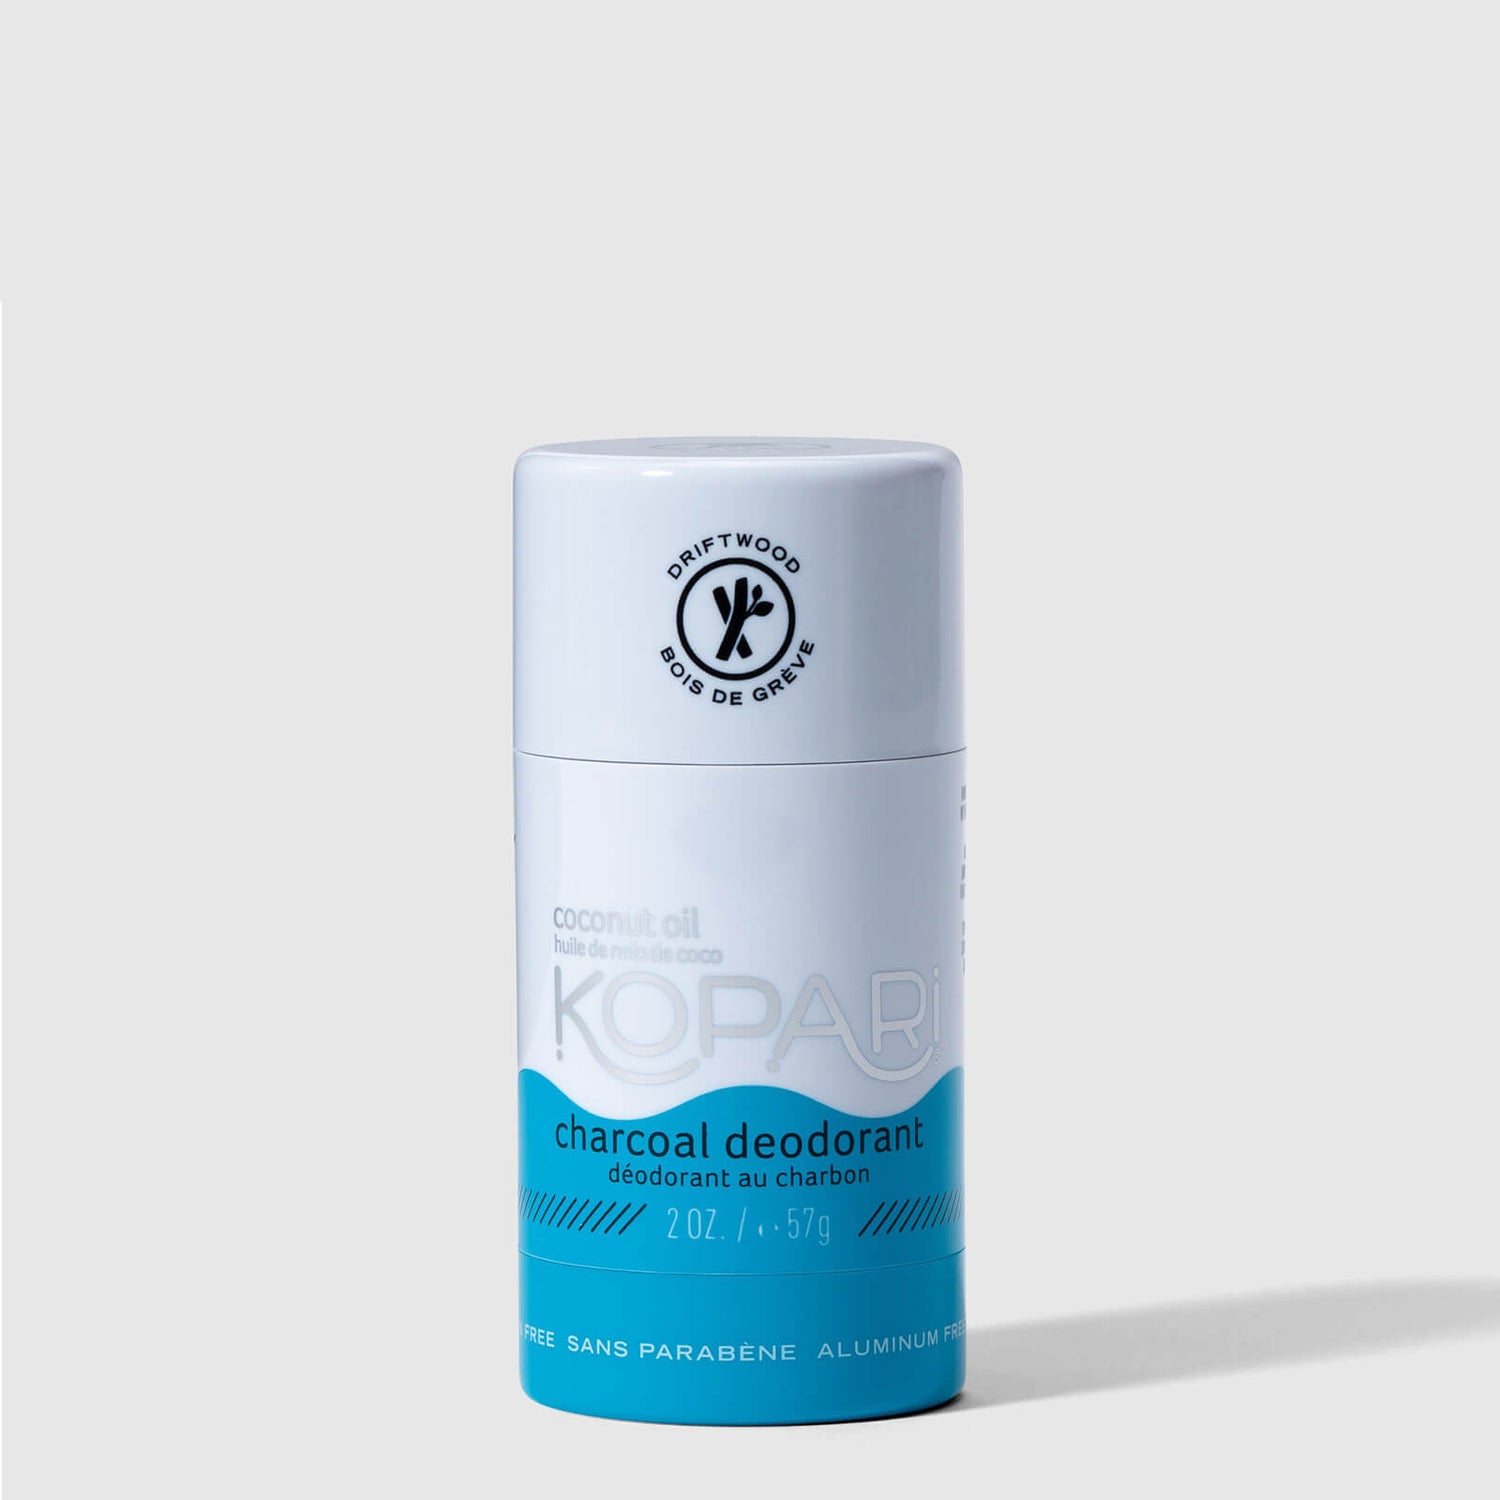 Kopari Beauty Aluminum Free Coconut Deodorant